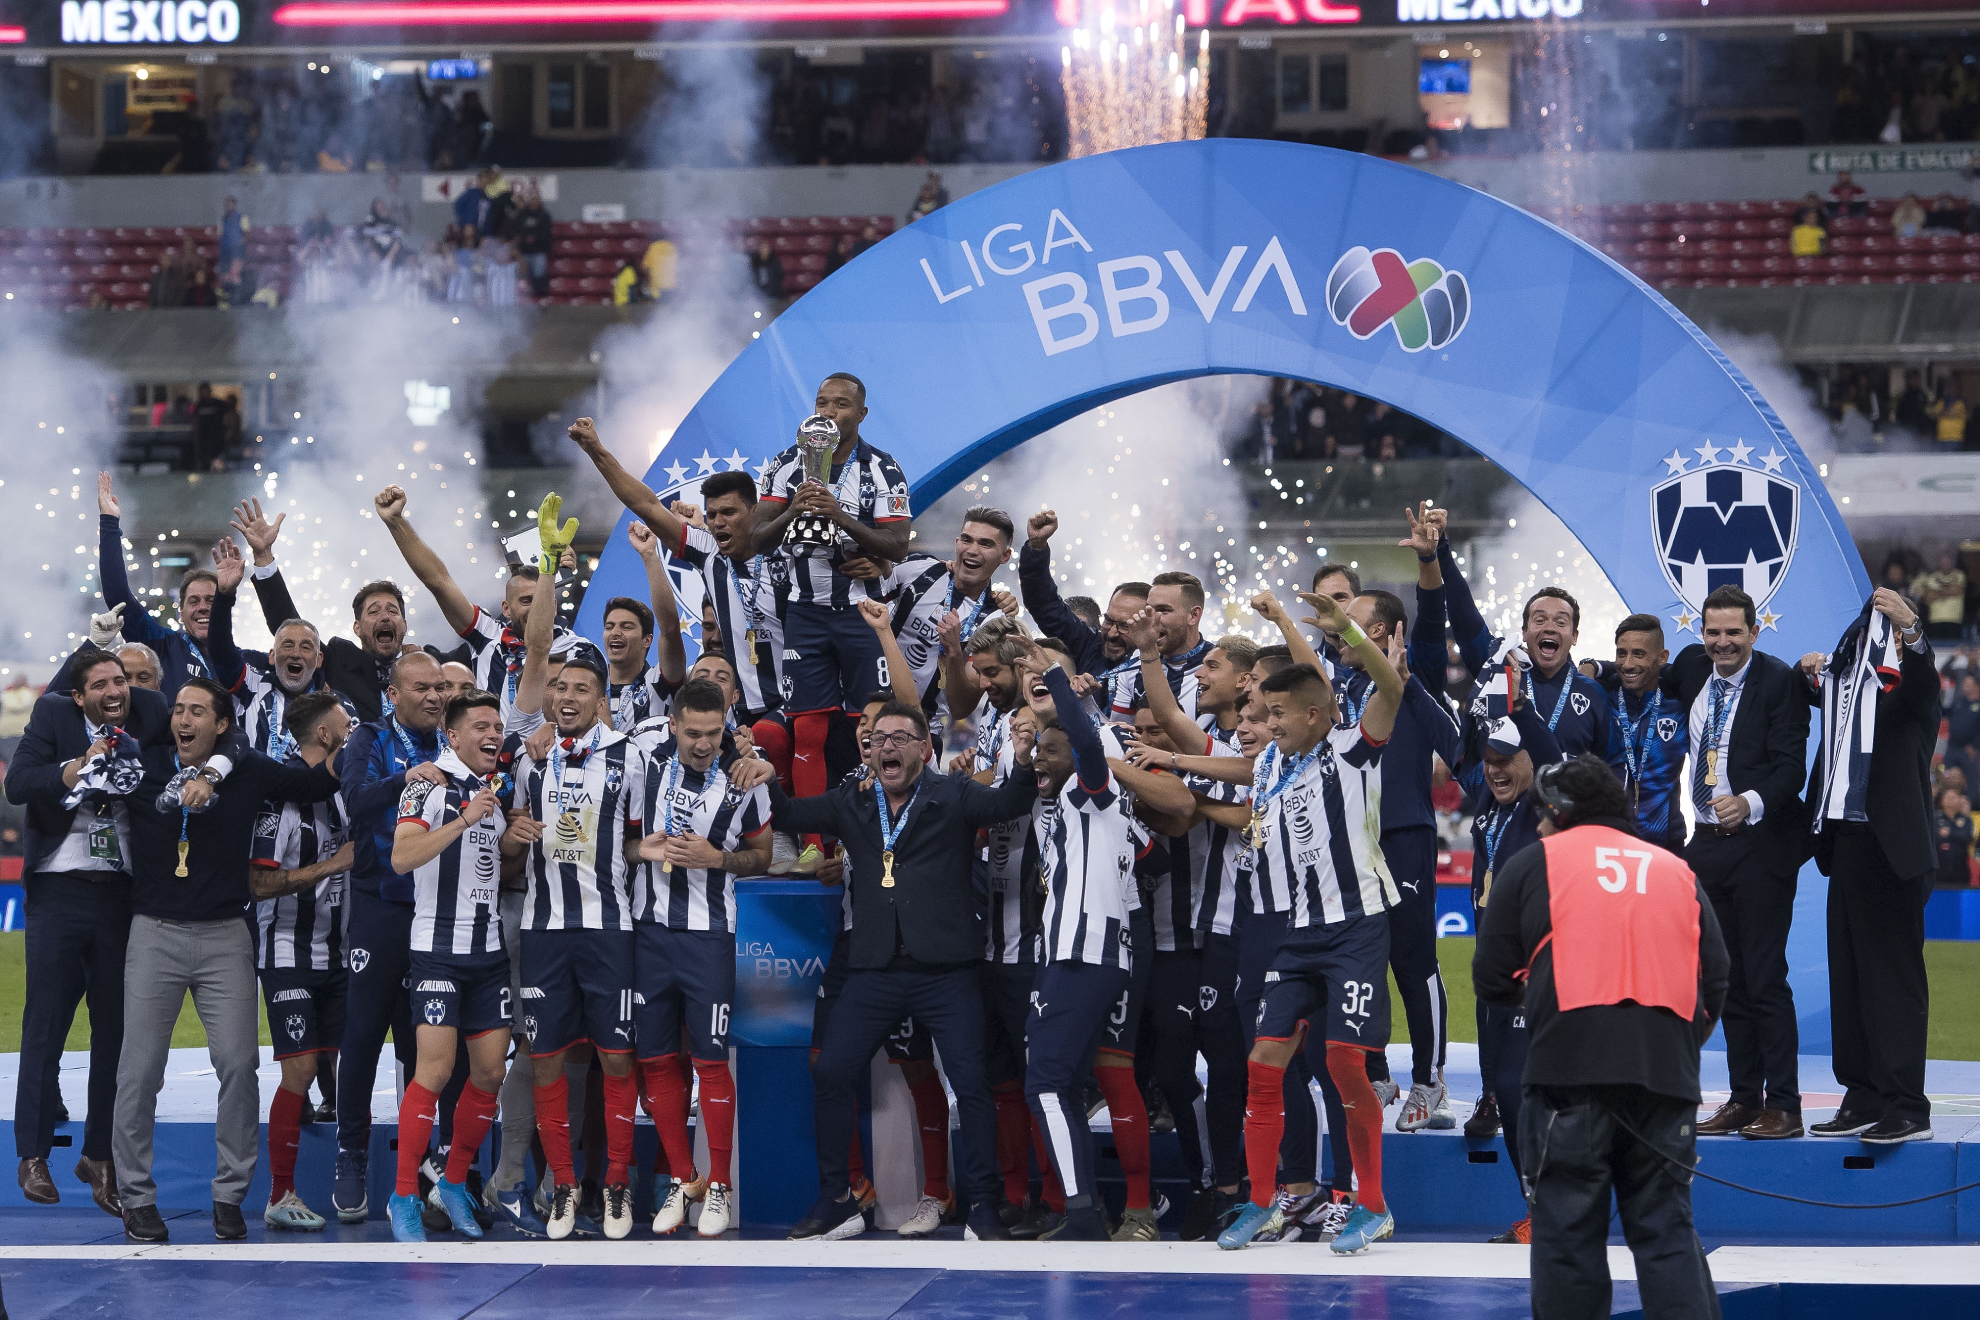 Títulos del América: cuántos campeonatos tiene en Liga MX y en